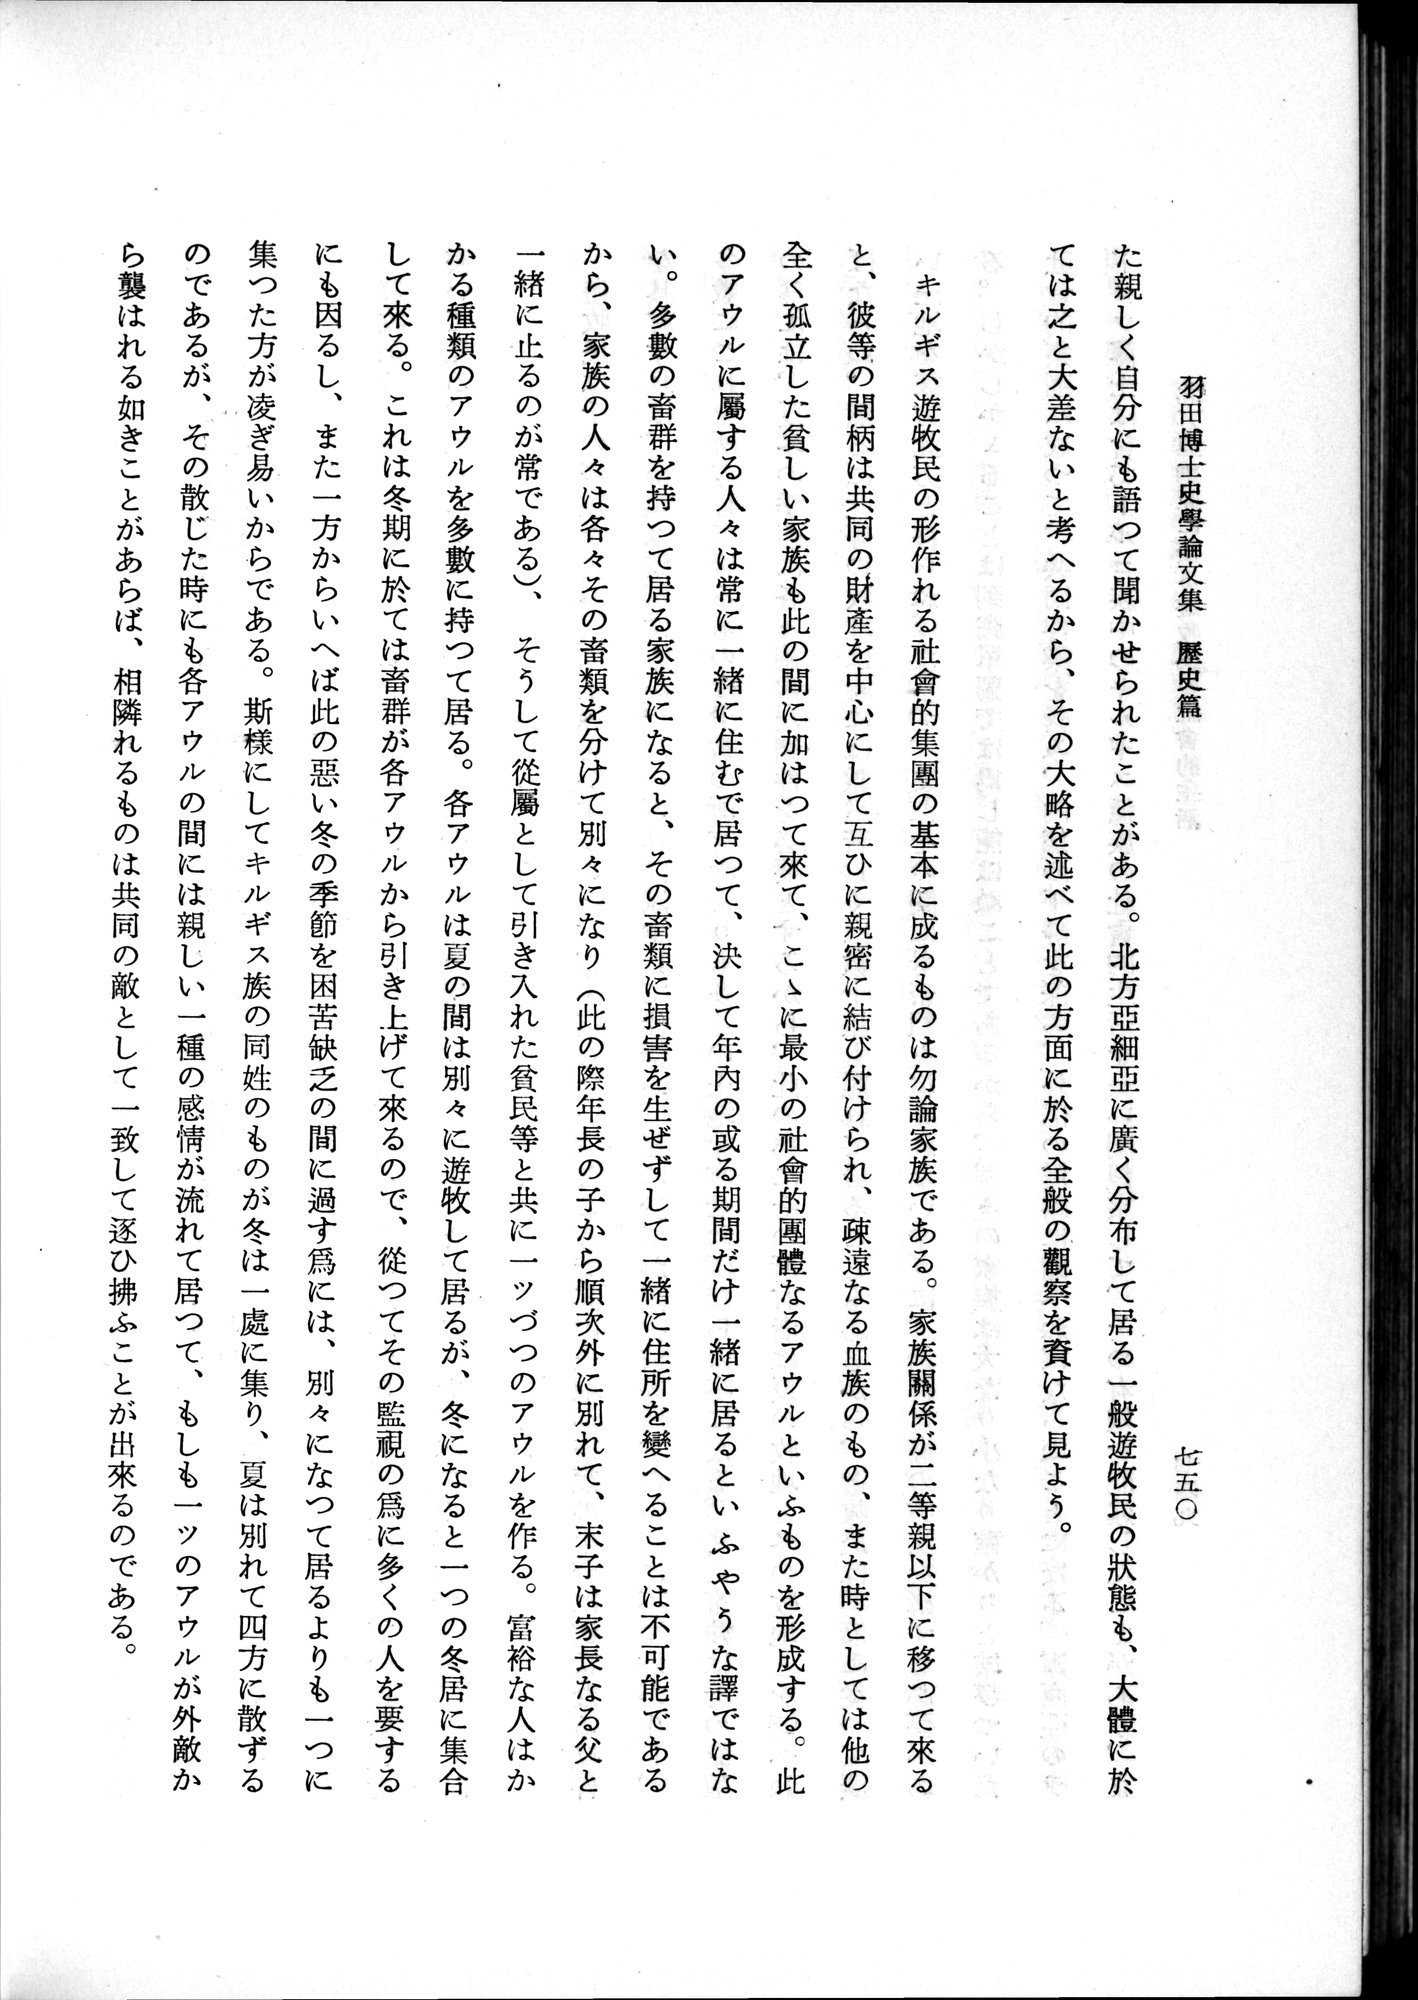 羽田博士史学論文集 : vol.1 / 788 ページ（白黒高解像度画像）